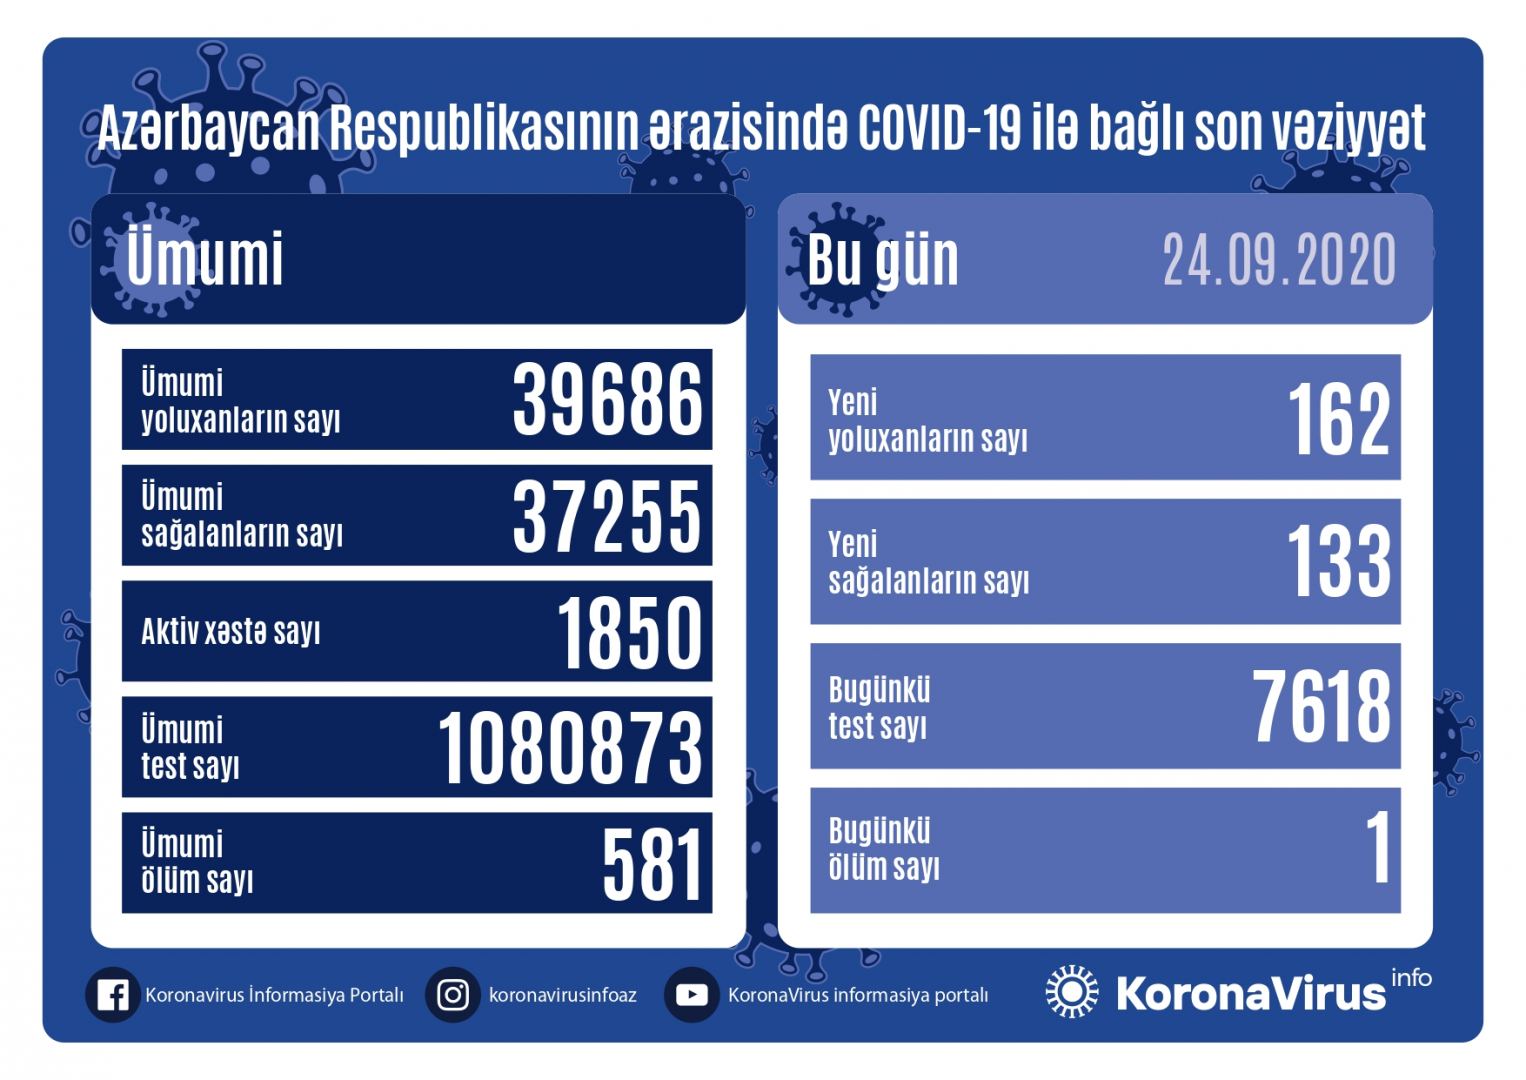 Azərbaycanda 162 nəfər koronavirusa yoluxdu, 133 nəfər sağaldı, 1 nəfər vəfat etdi